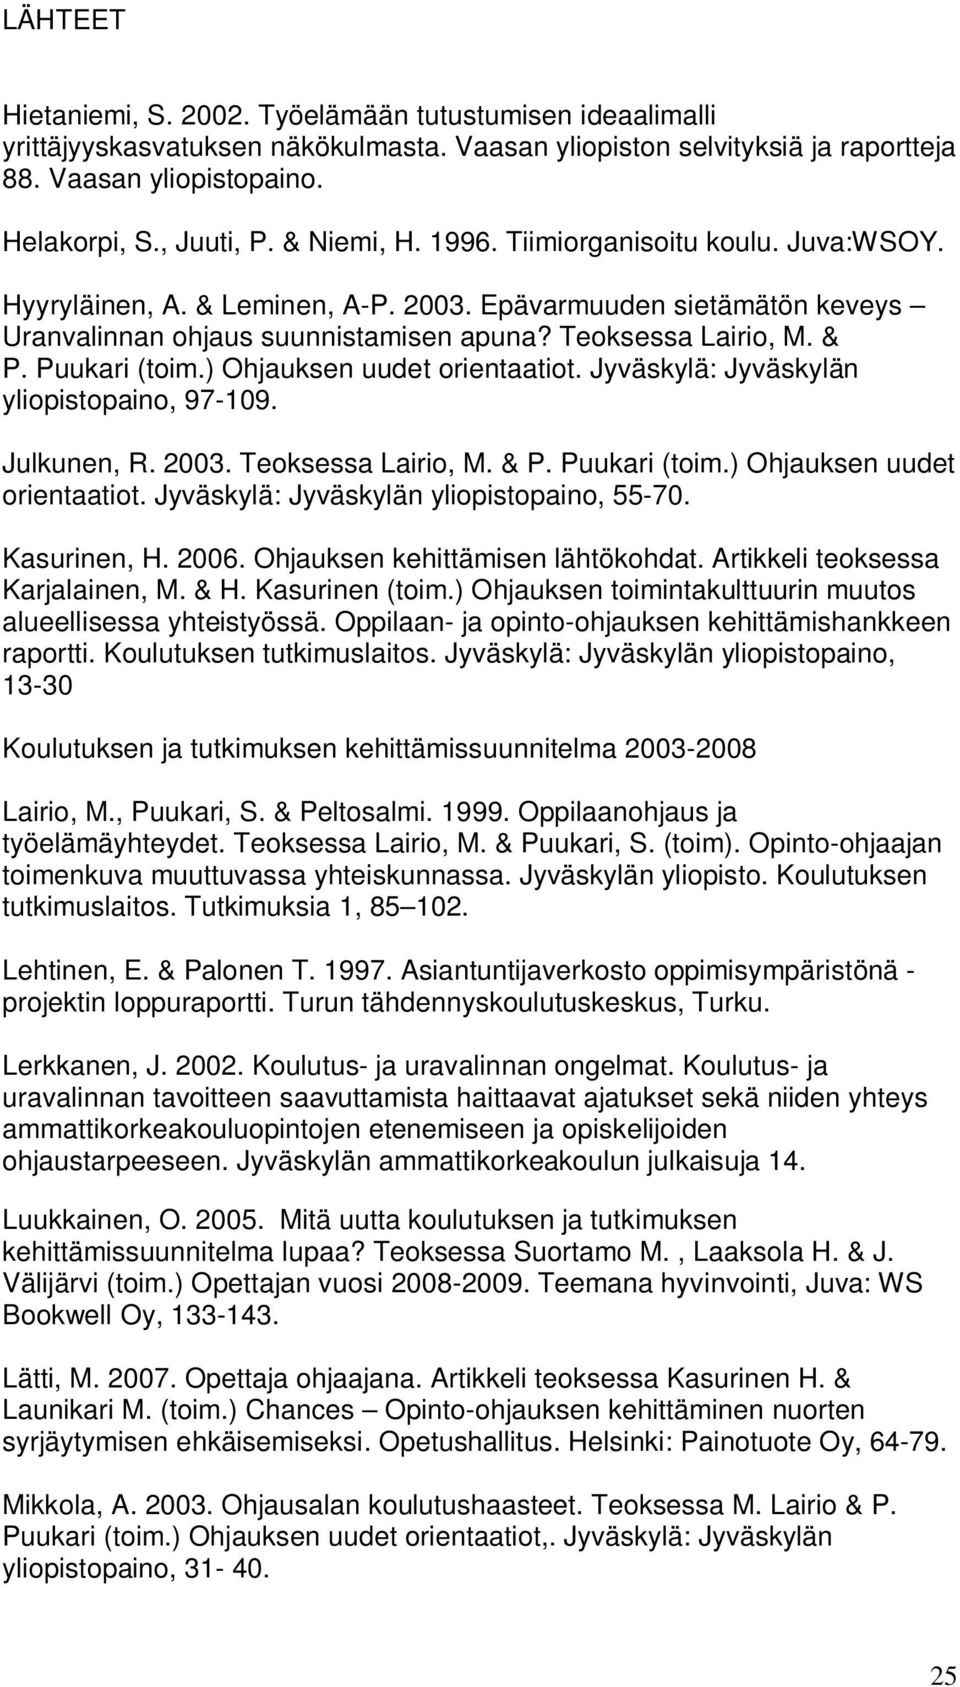 Puukari (toim.) Ohjauksen uudet orientaatiot. Jyväskylä: Jyväskylän yliopistopaino, 97-109. Julkunen, R. 2003. Teoksessa Lairio, M. & P. Puukari (toim.) Ohjauksen uudet orientaatiot. Jyväskylä: Jyväskylän yliopistopaino, 55-70.